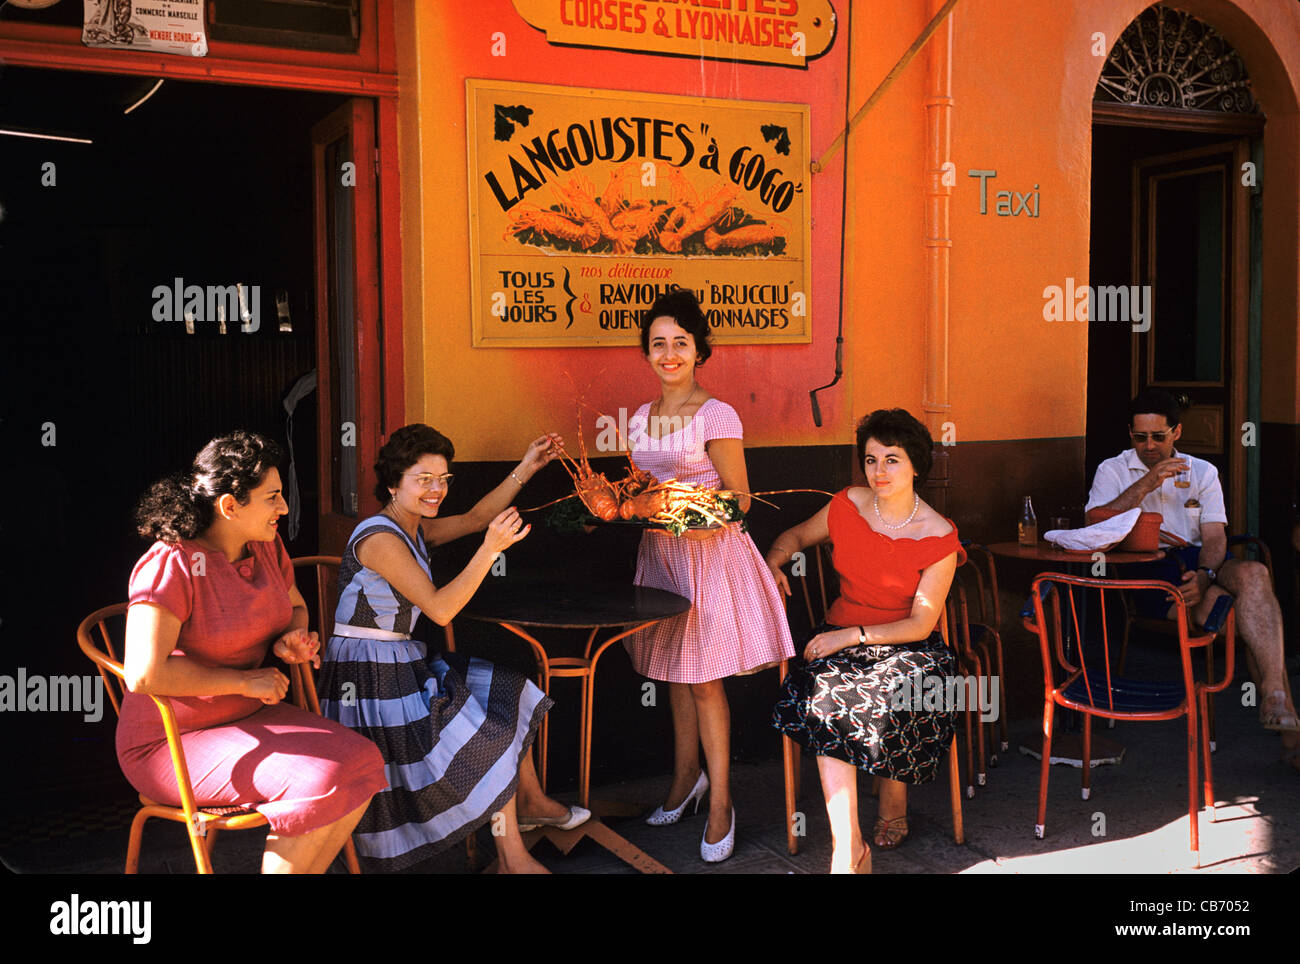 Les femmes françaises années 50 ou 60 à l'extérieur d'un restaurant spécialisé dans les fruits de mer Homard, Porto Vecchio, Corse, France Banque D'Images